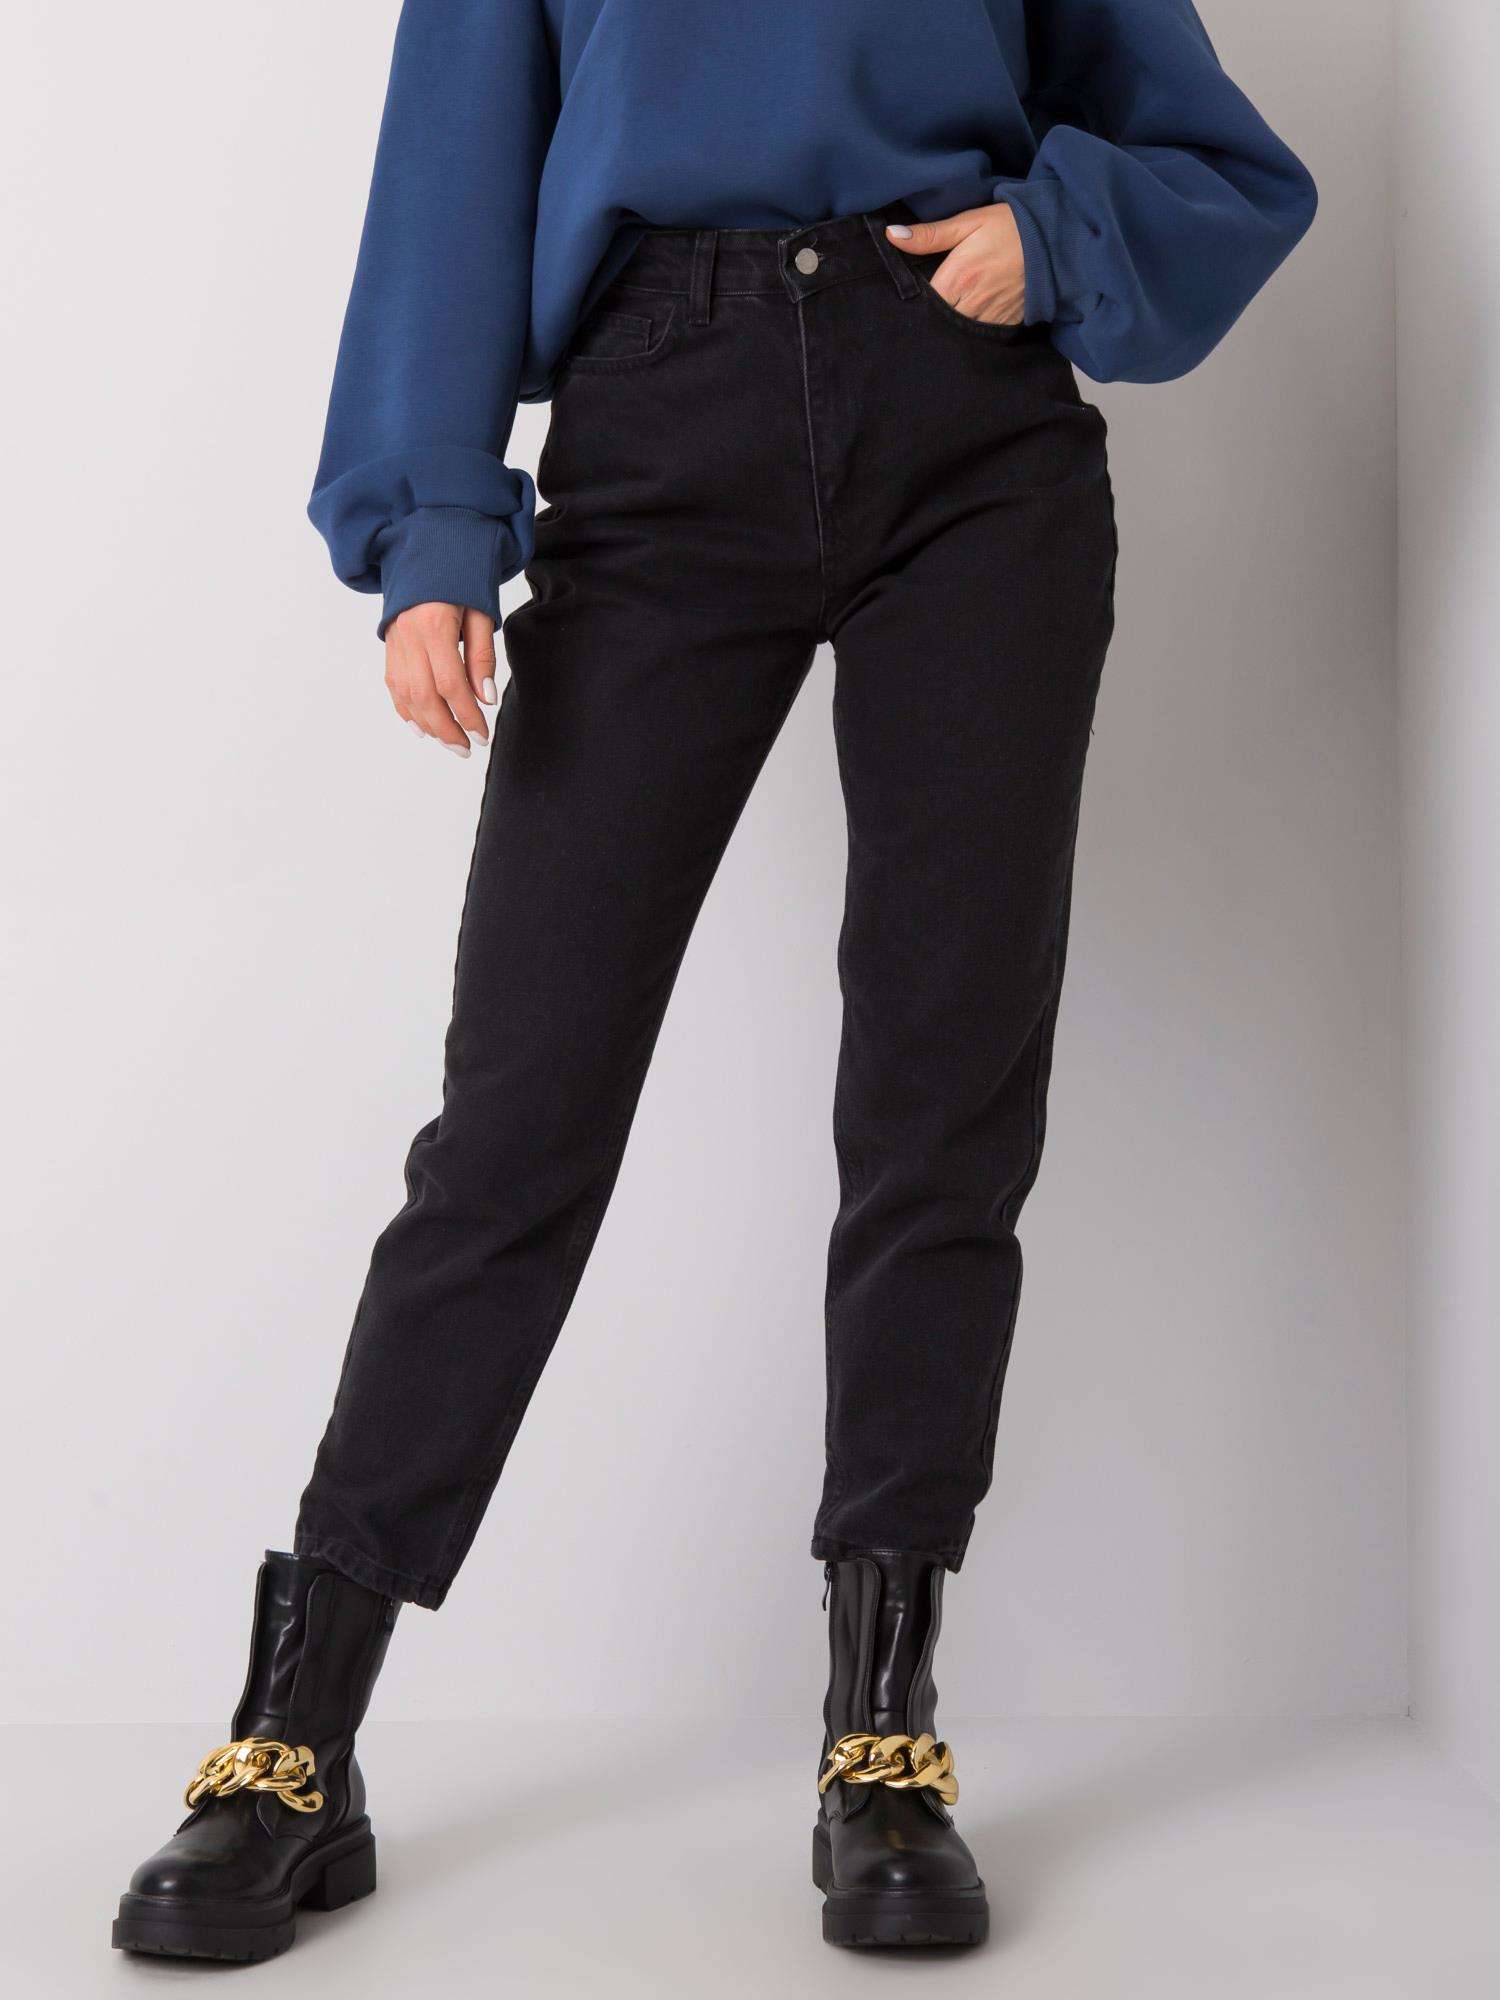 Čierne dámske džínsy s vysokým pásom MT-SP-PIO50406-4.30X-black Veľkosť: 36